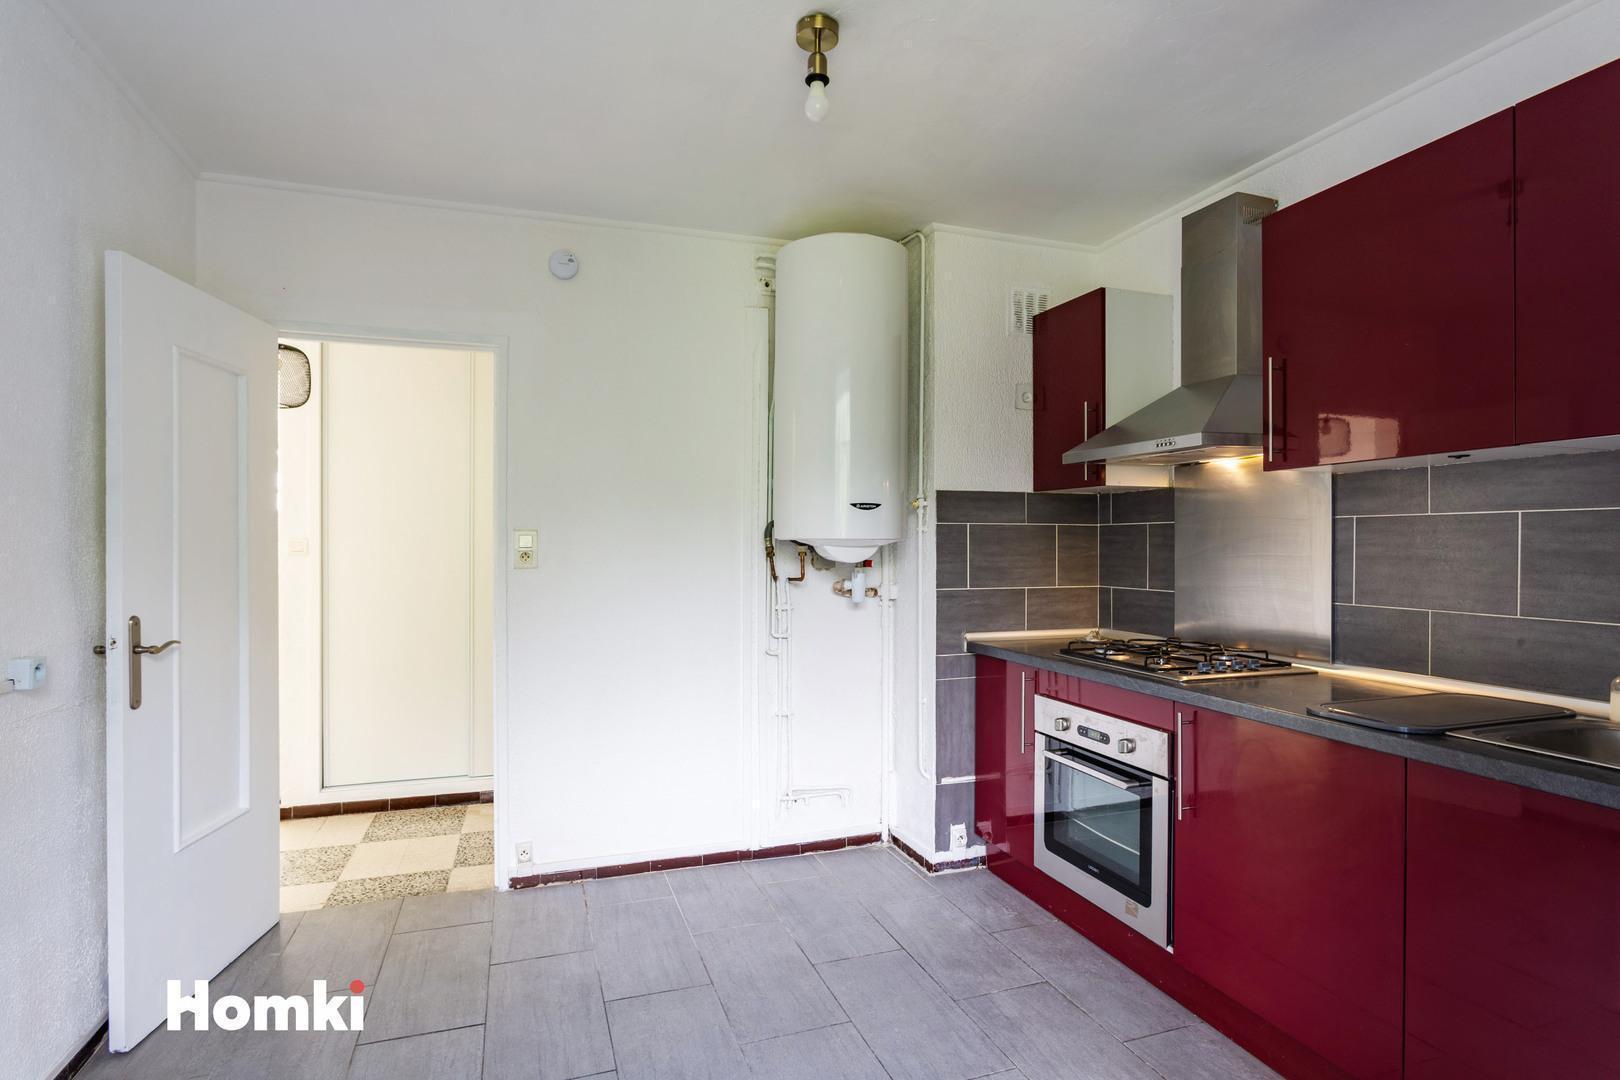 Homki - Vente Appartement  de 63.0 m² à Nîmes 30900